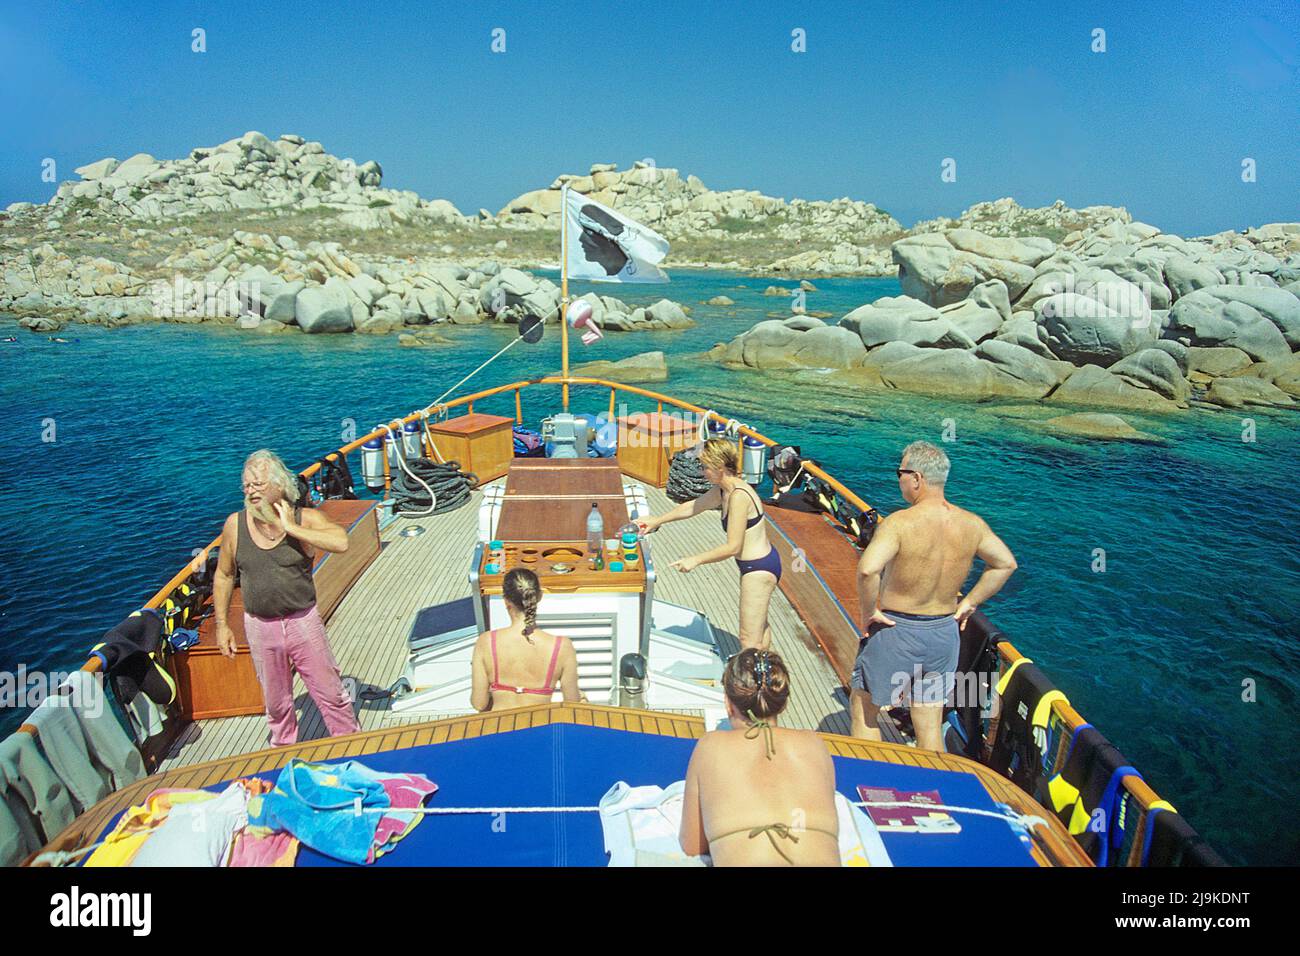 Bateau de plongée MS Galiote aux îles Lavezzi, groupe de petite île de granit entre la Corse et la Sardaigne, Corse, France, Méditerranée, Europe Banque D'Images